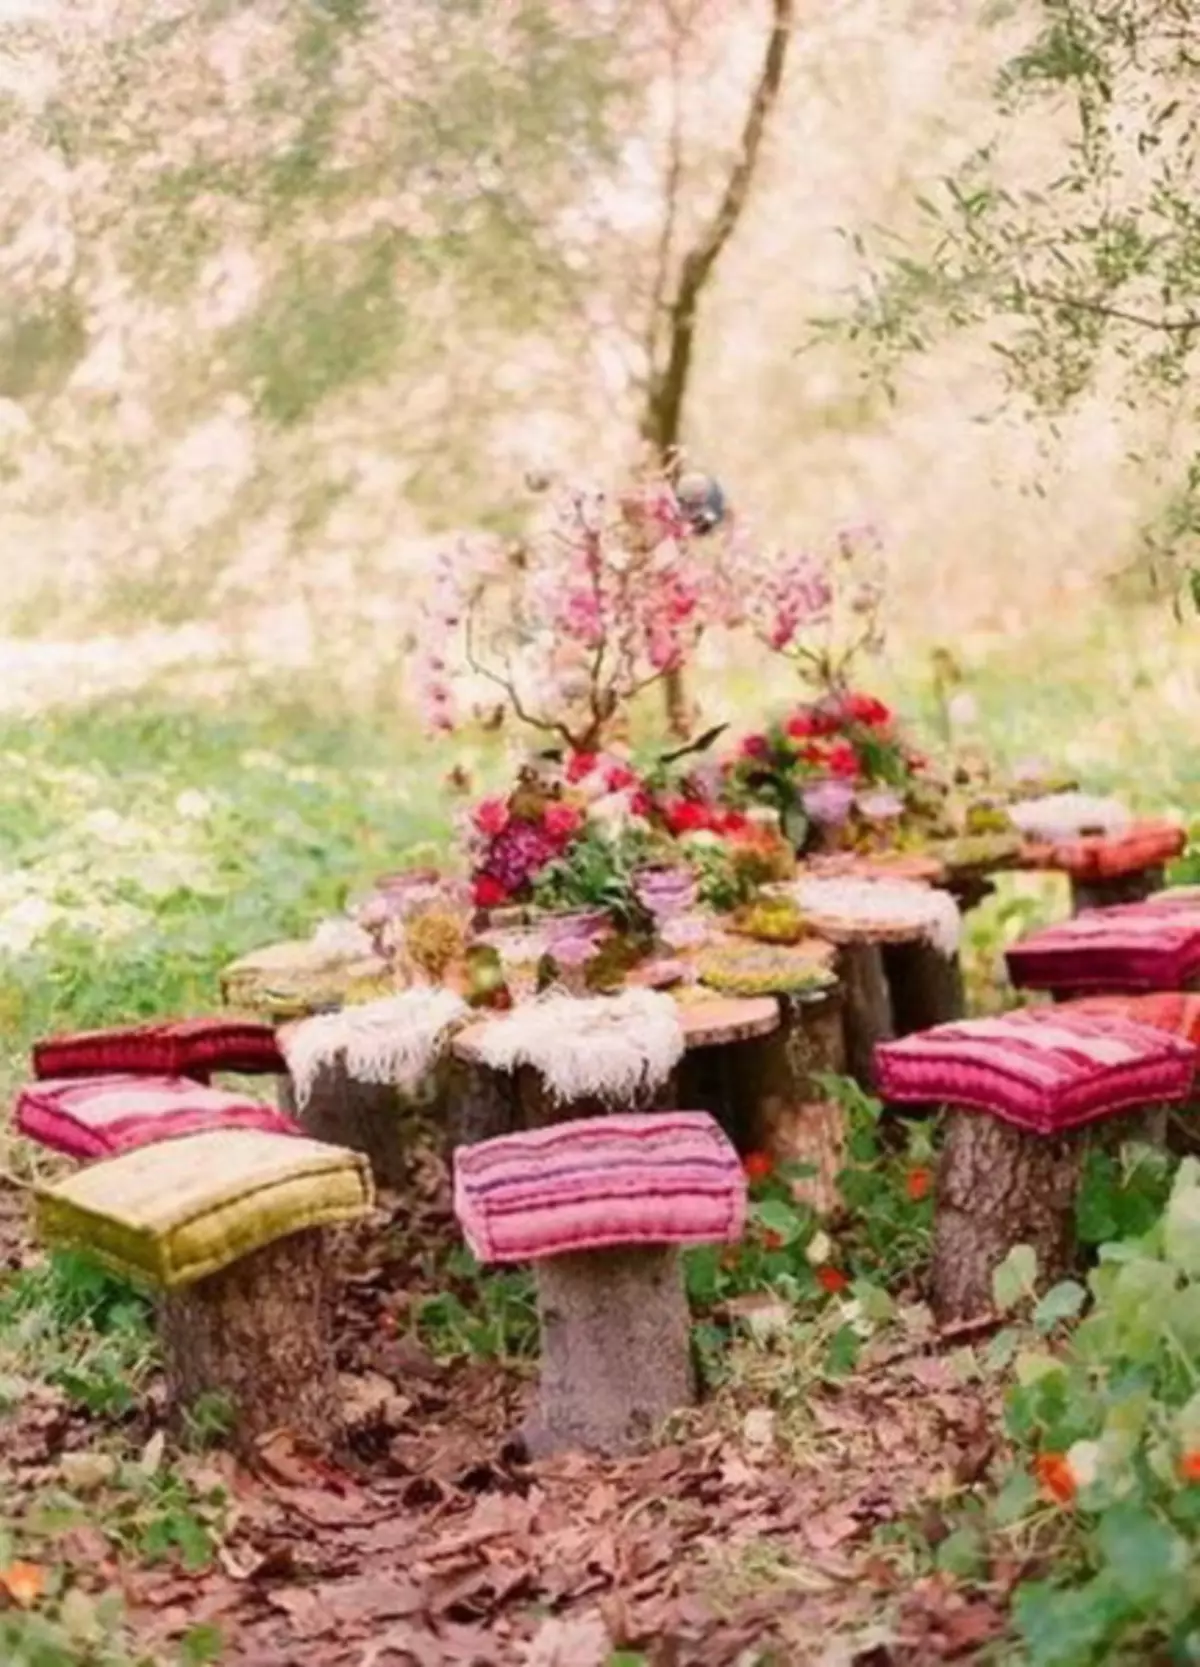 Hoe een mooie picknick in de natuur met je eigen handen te organiseren